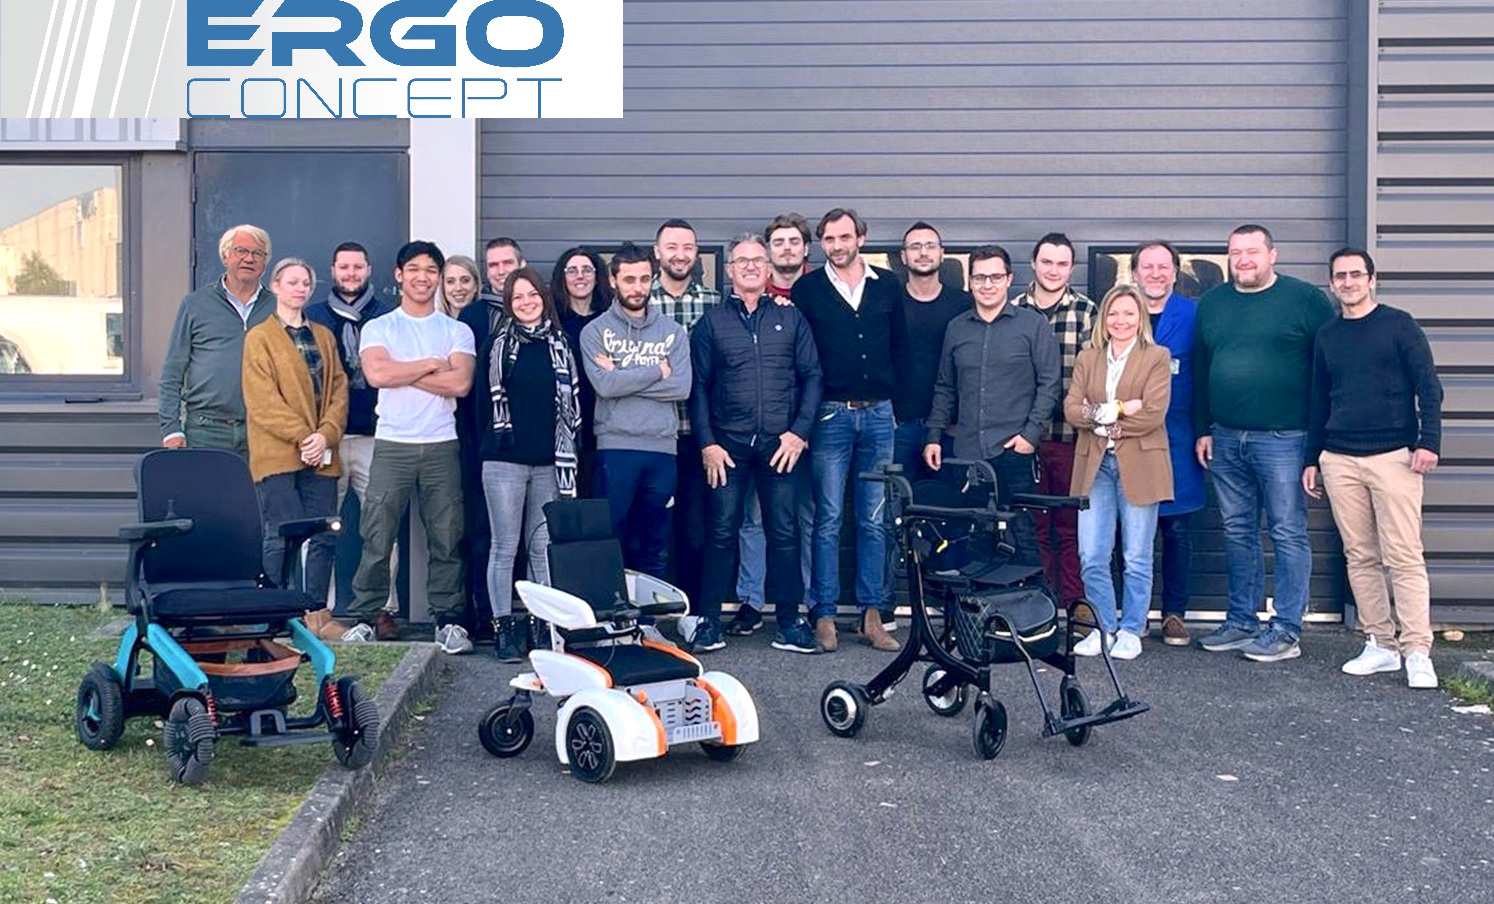 Équipe ErgoConcept - Fauteuils et scooter électrique pliable